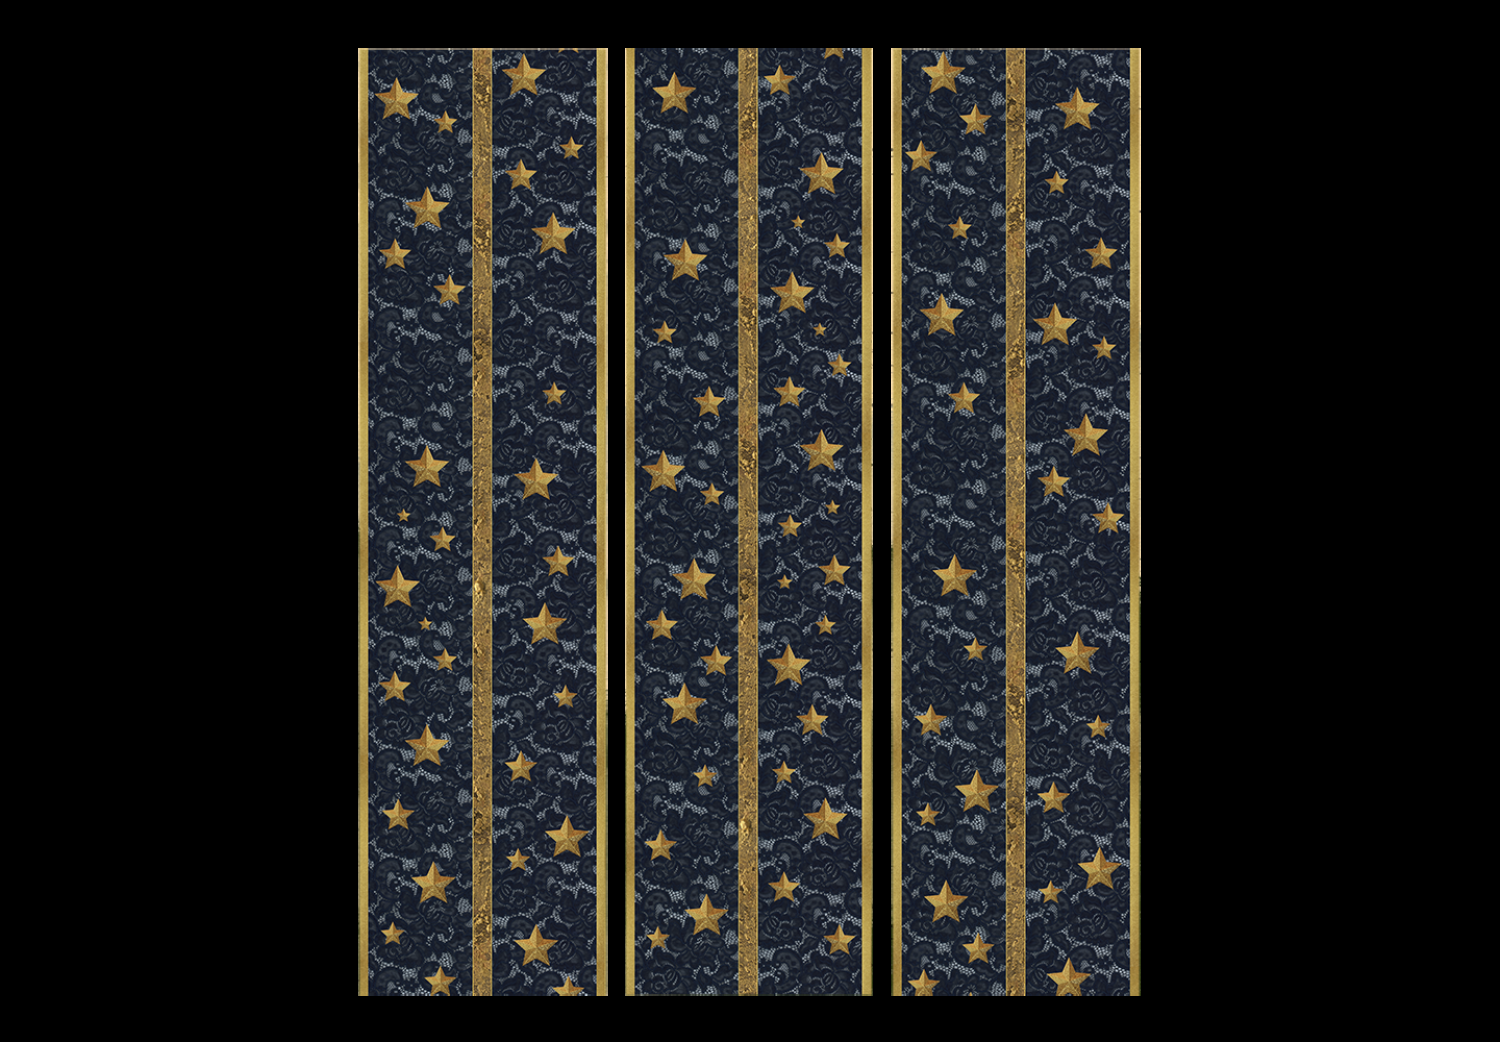 Biombo decorativo Constelación de encaje - estrellas doradas sobre tela negra de lujo